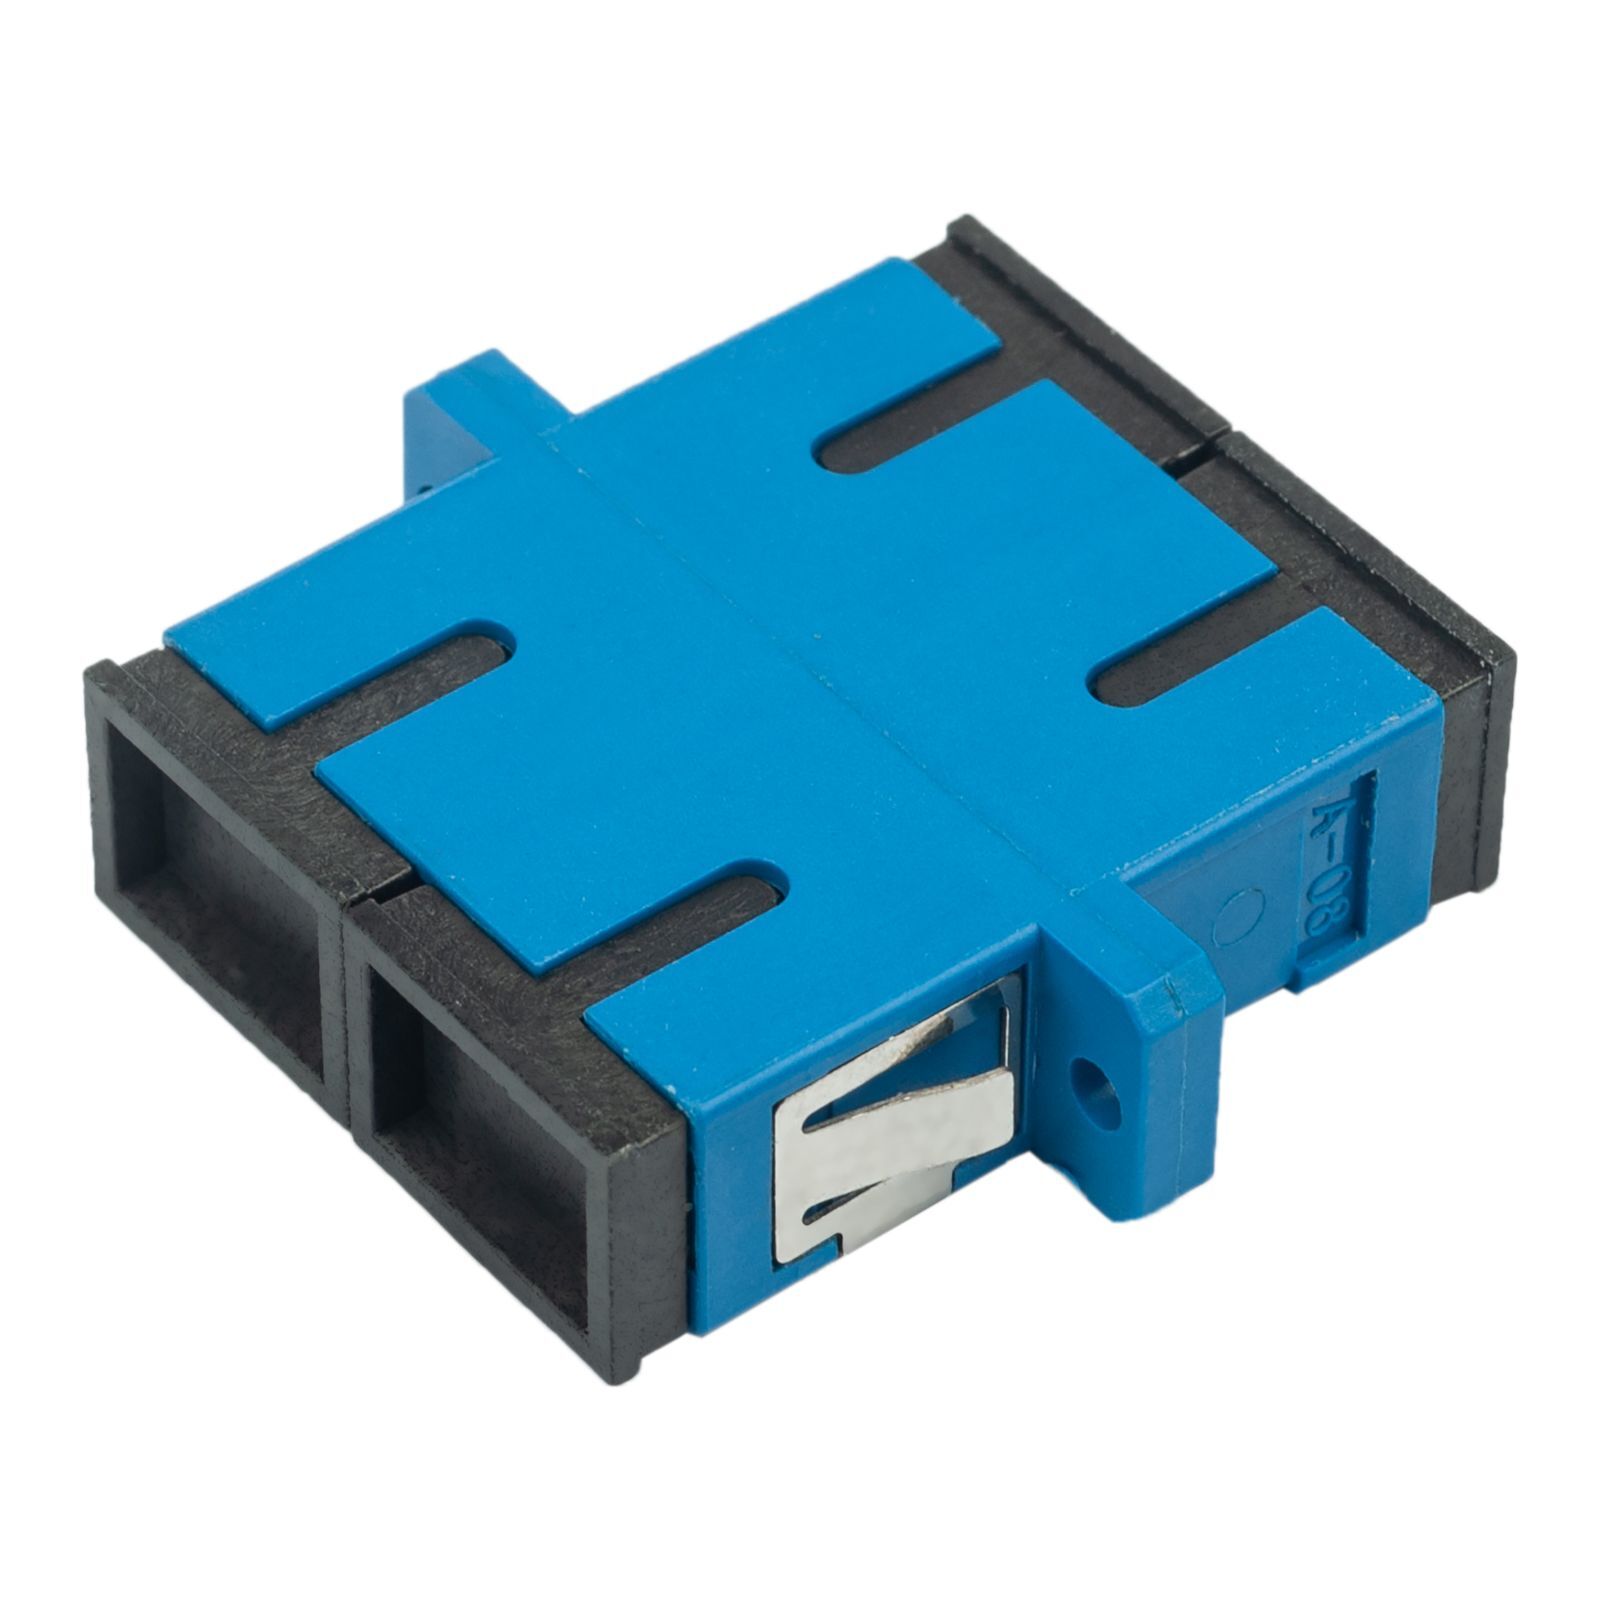 Адаптер оптический проходной SC-SC, OS2, дуплекс (duplex), синий Datarex DR-541002